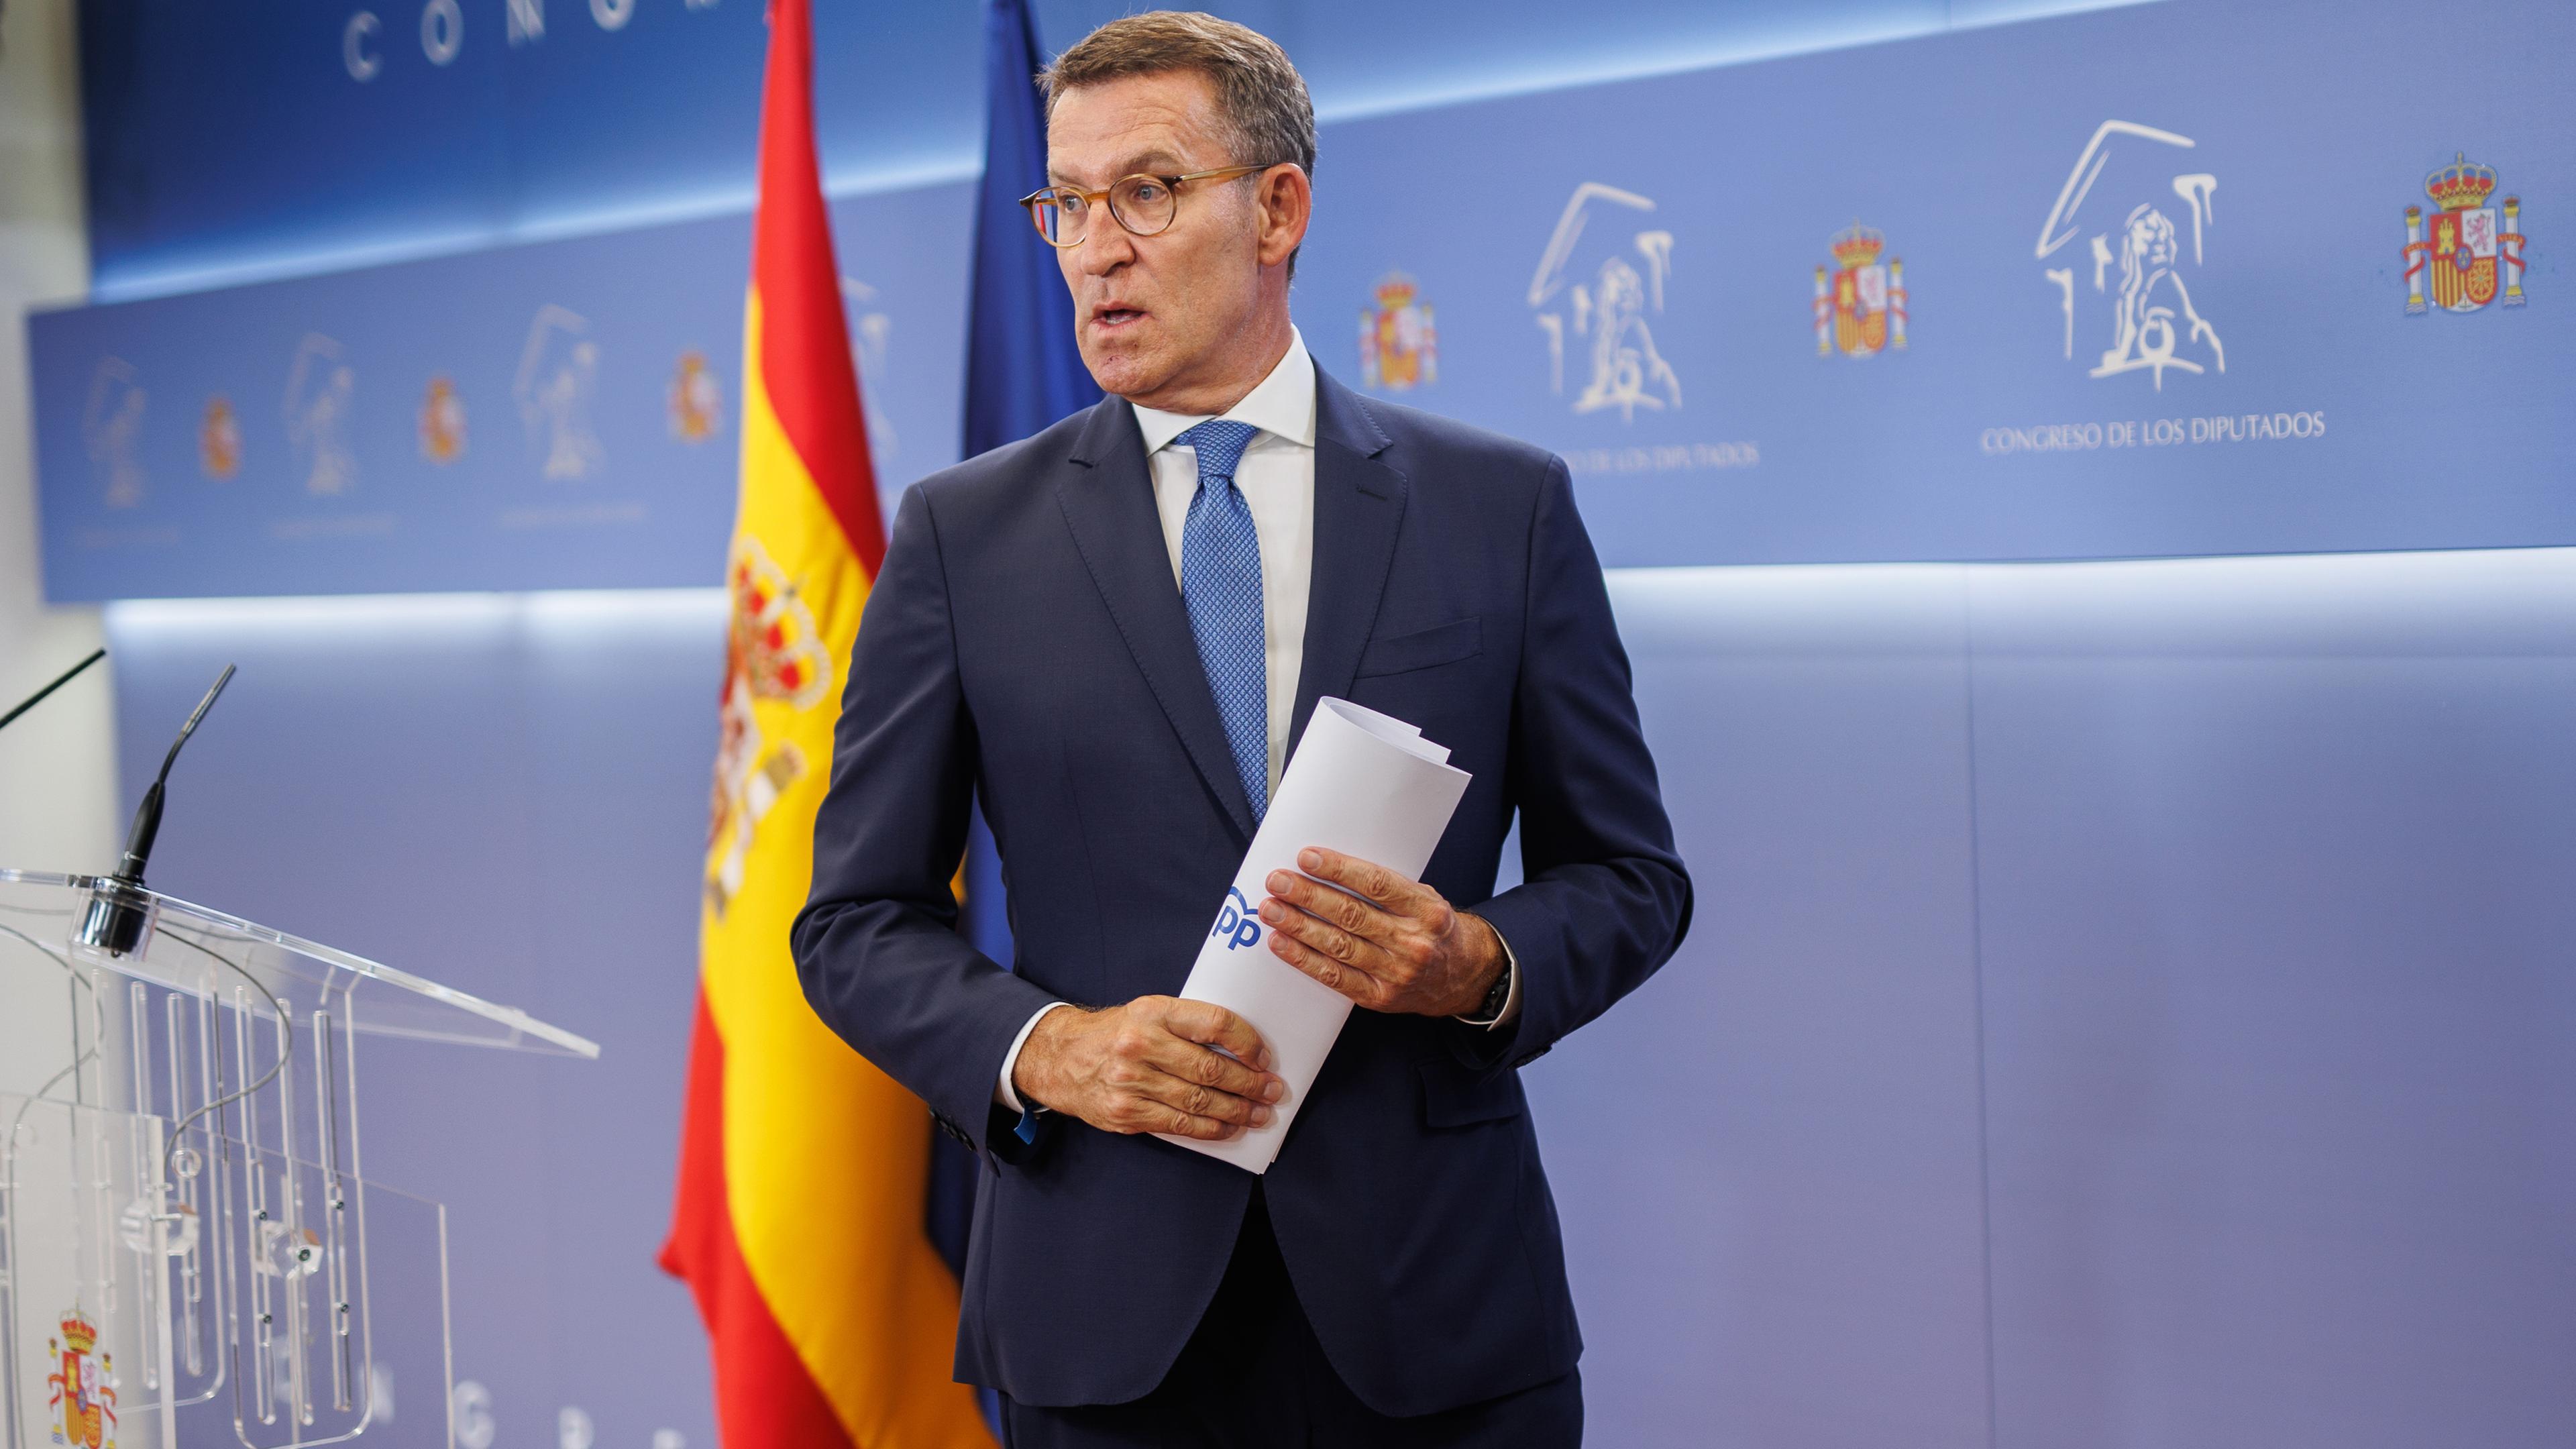 Spanien, Madrid: Alberto Nunez Feijoo, Vorsitzender der Partei PP und Oppositionsführer, verlässt den Saal nach einer Pressekonferenz.